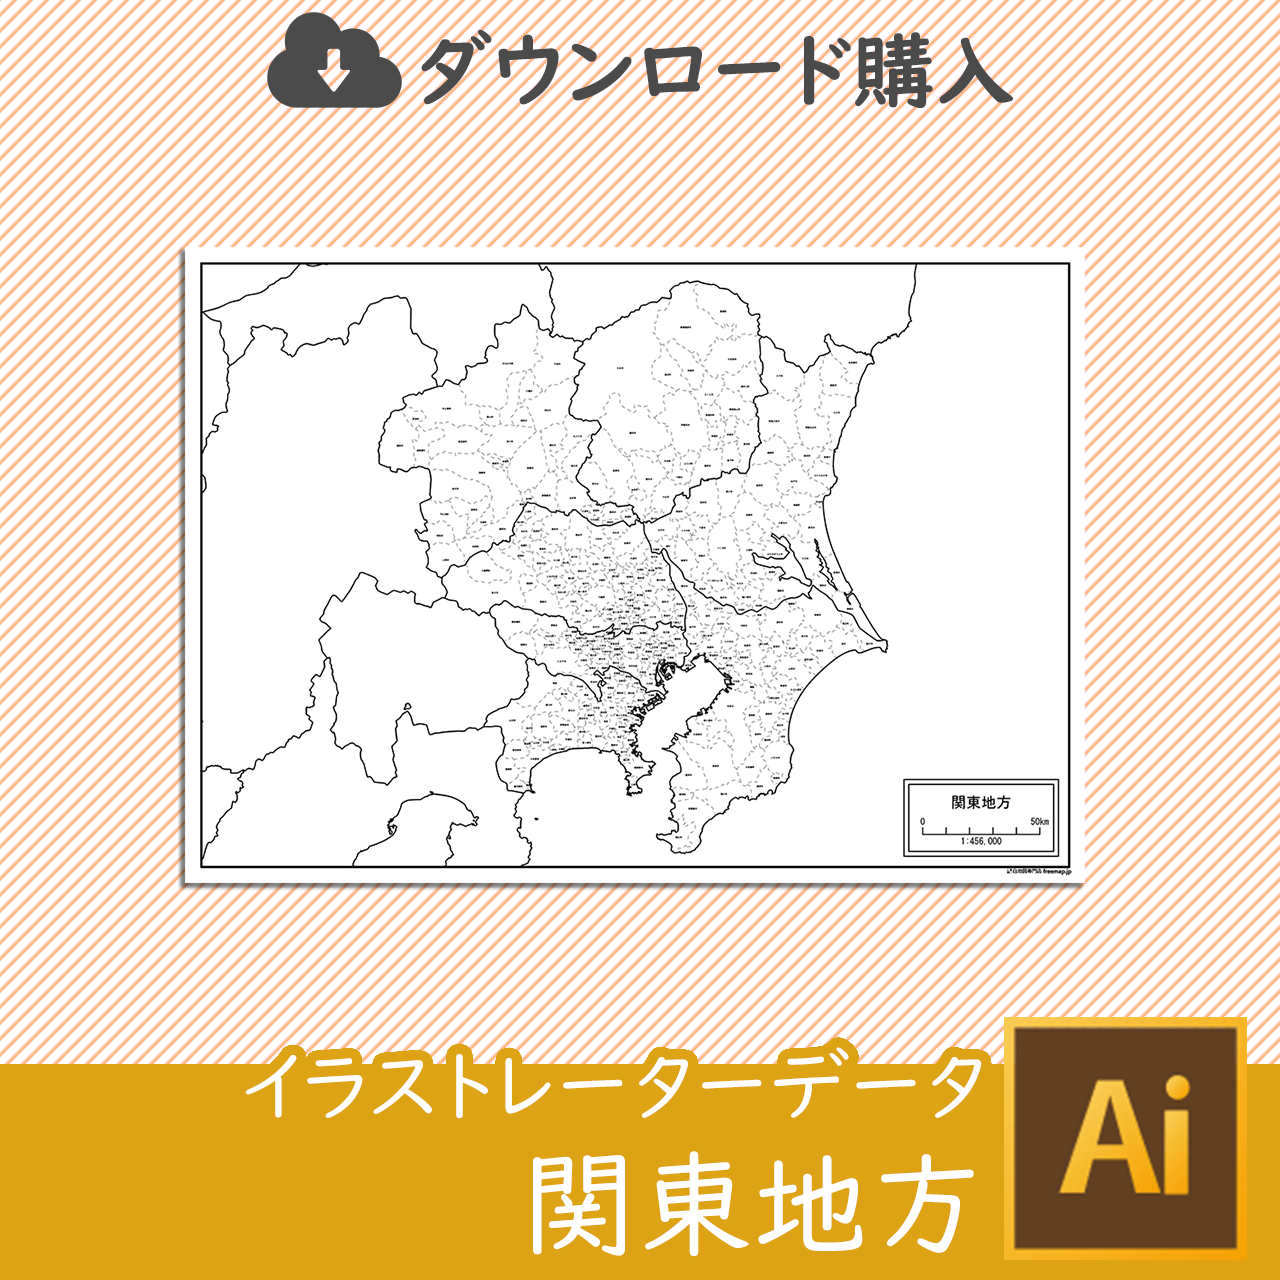 関東地方の白地図のサムネイル